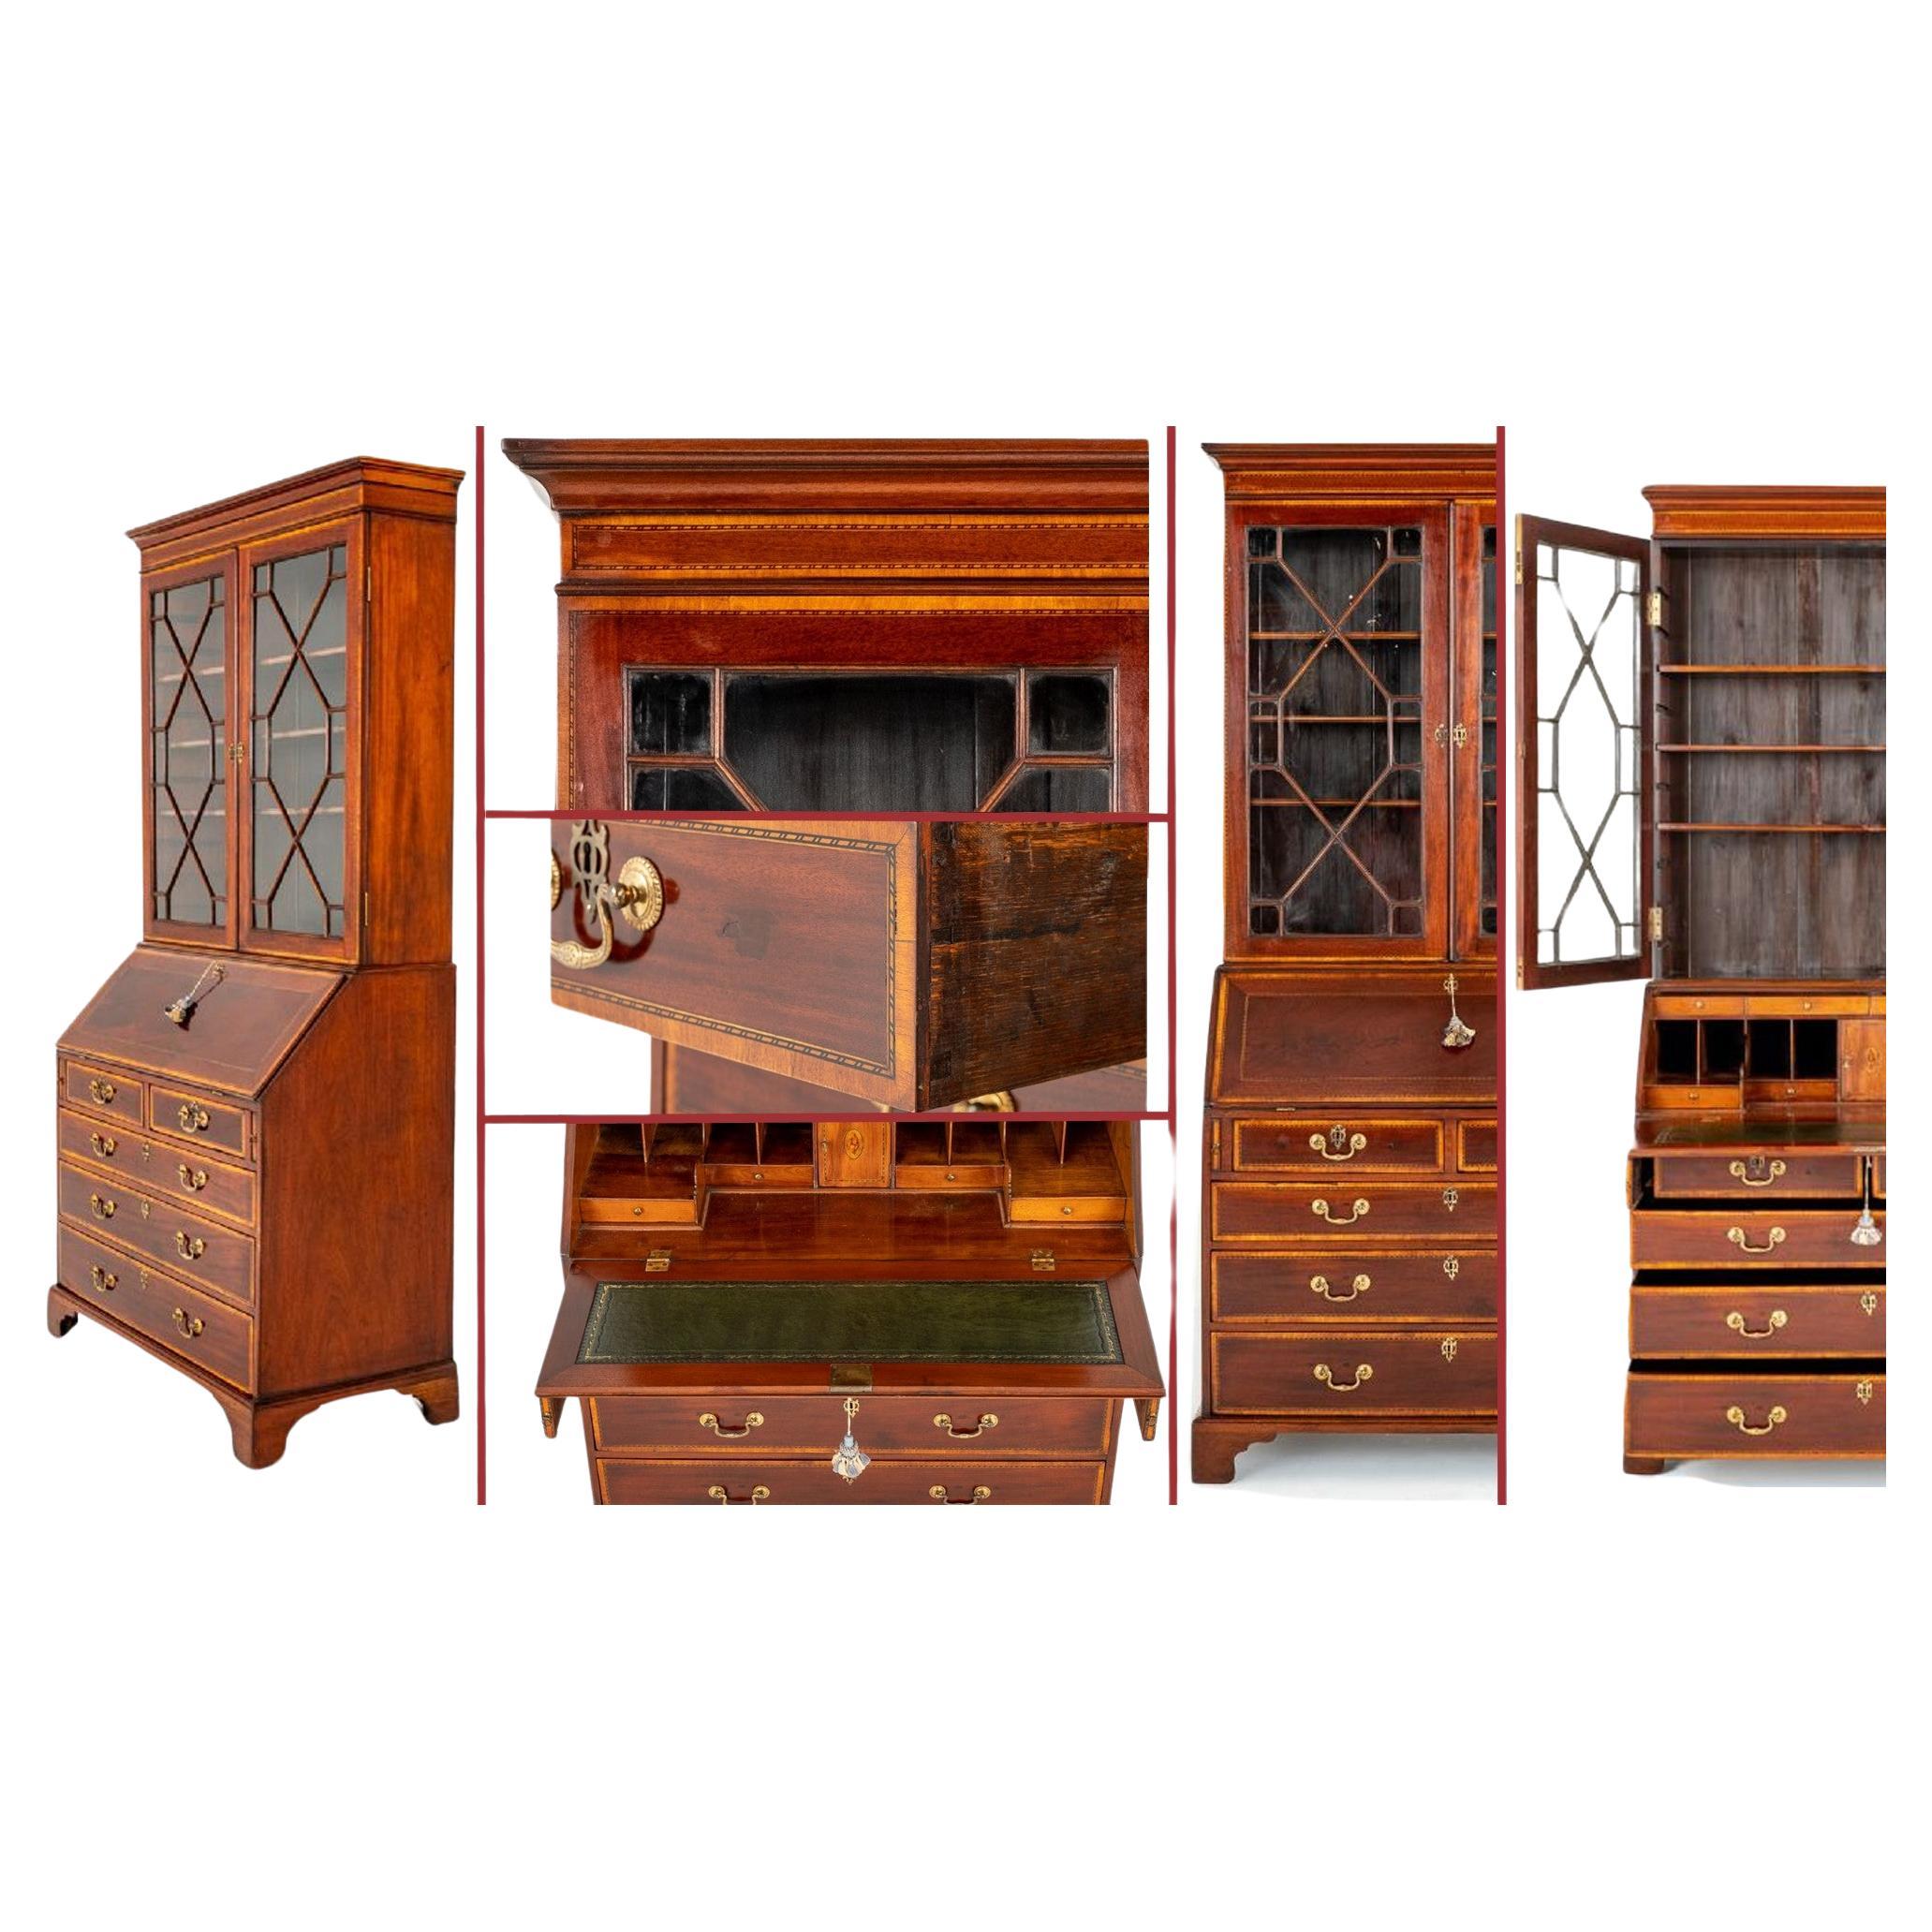 Georgian Bureau Bookcase Period Mahogany Desk